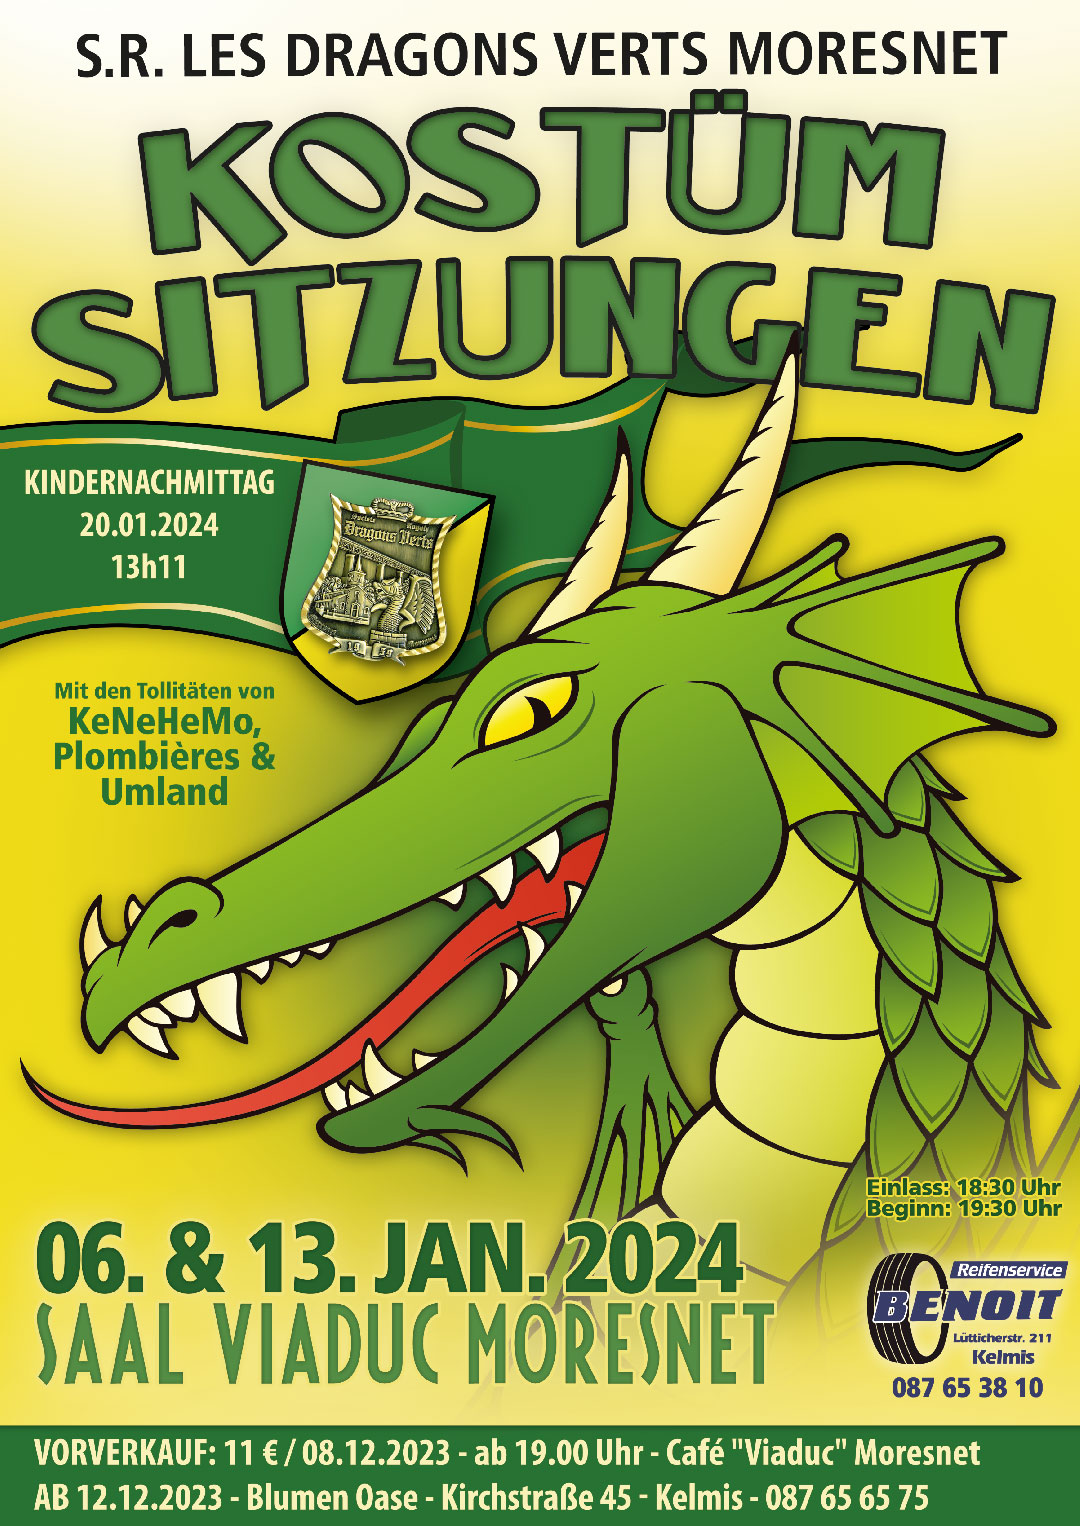 Affiche des Sitzung des Dragon Verts